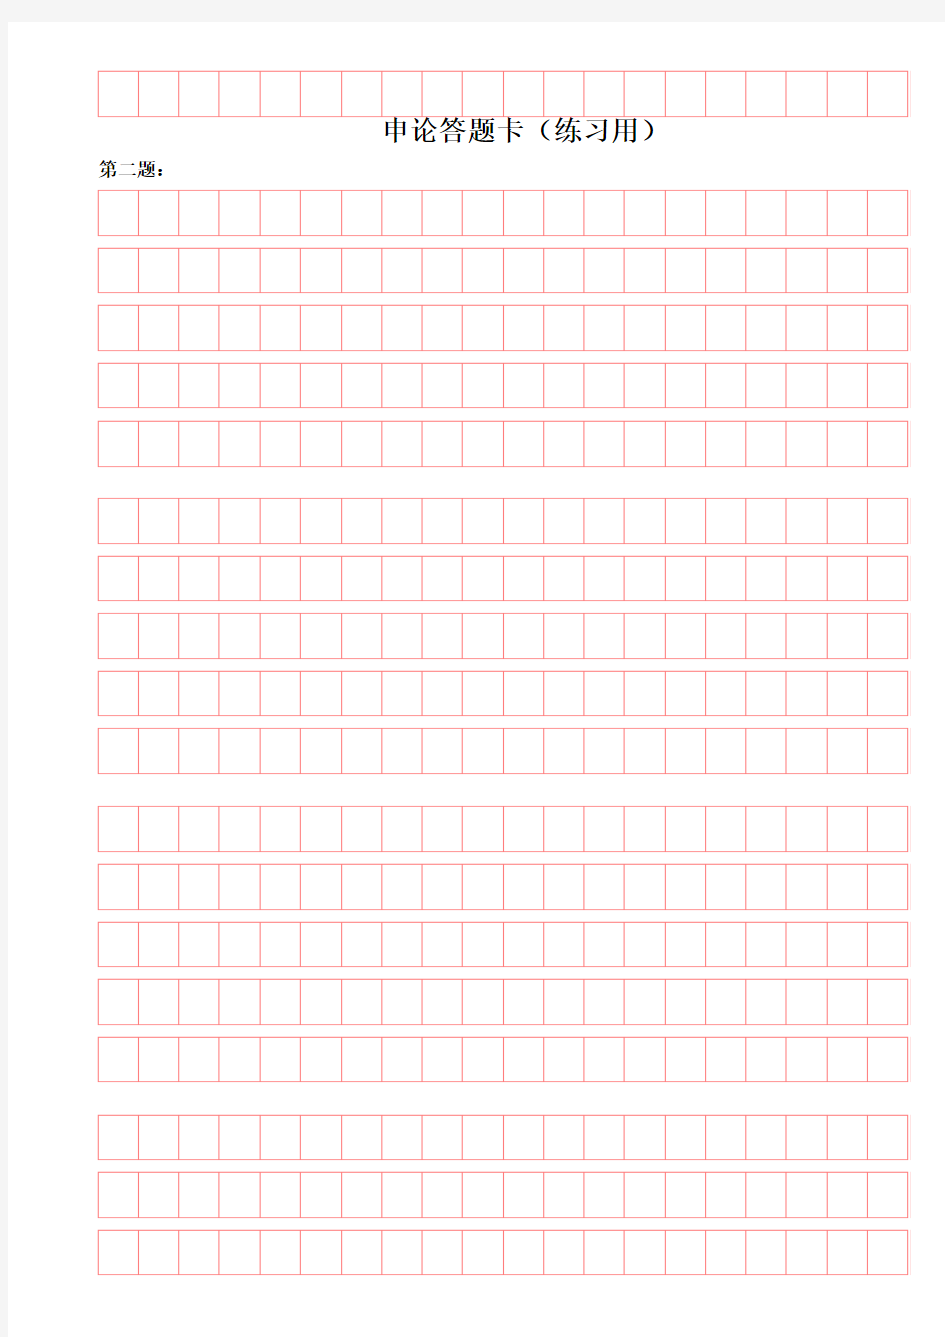 申论答题卡(20×5规格自制练习版可直接打印)